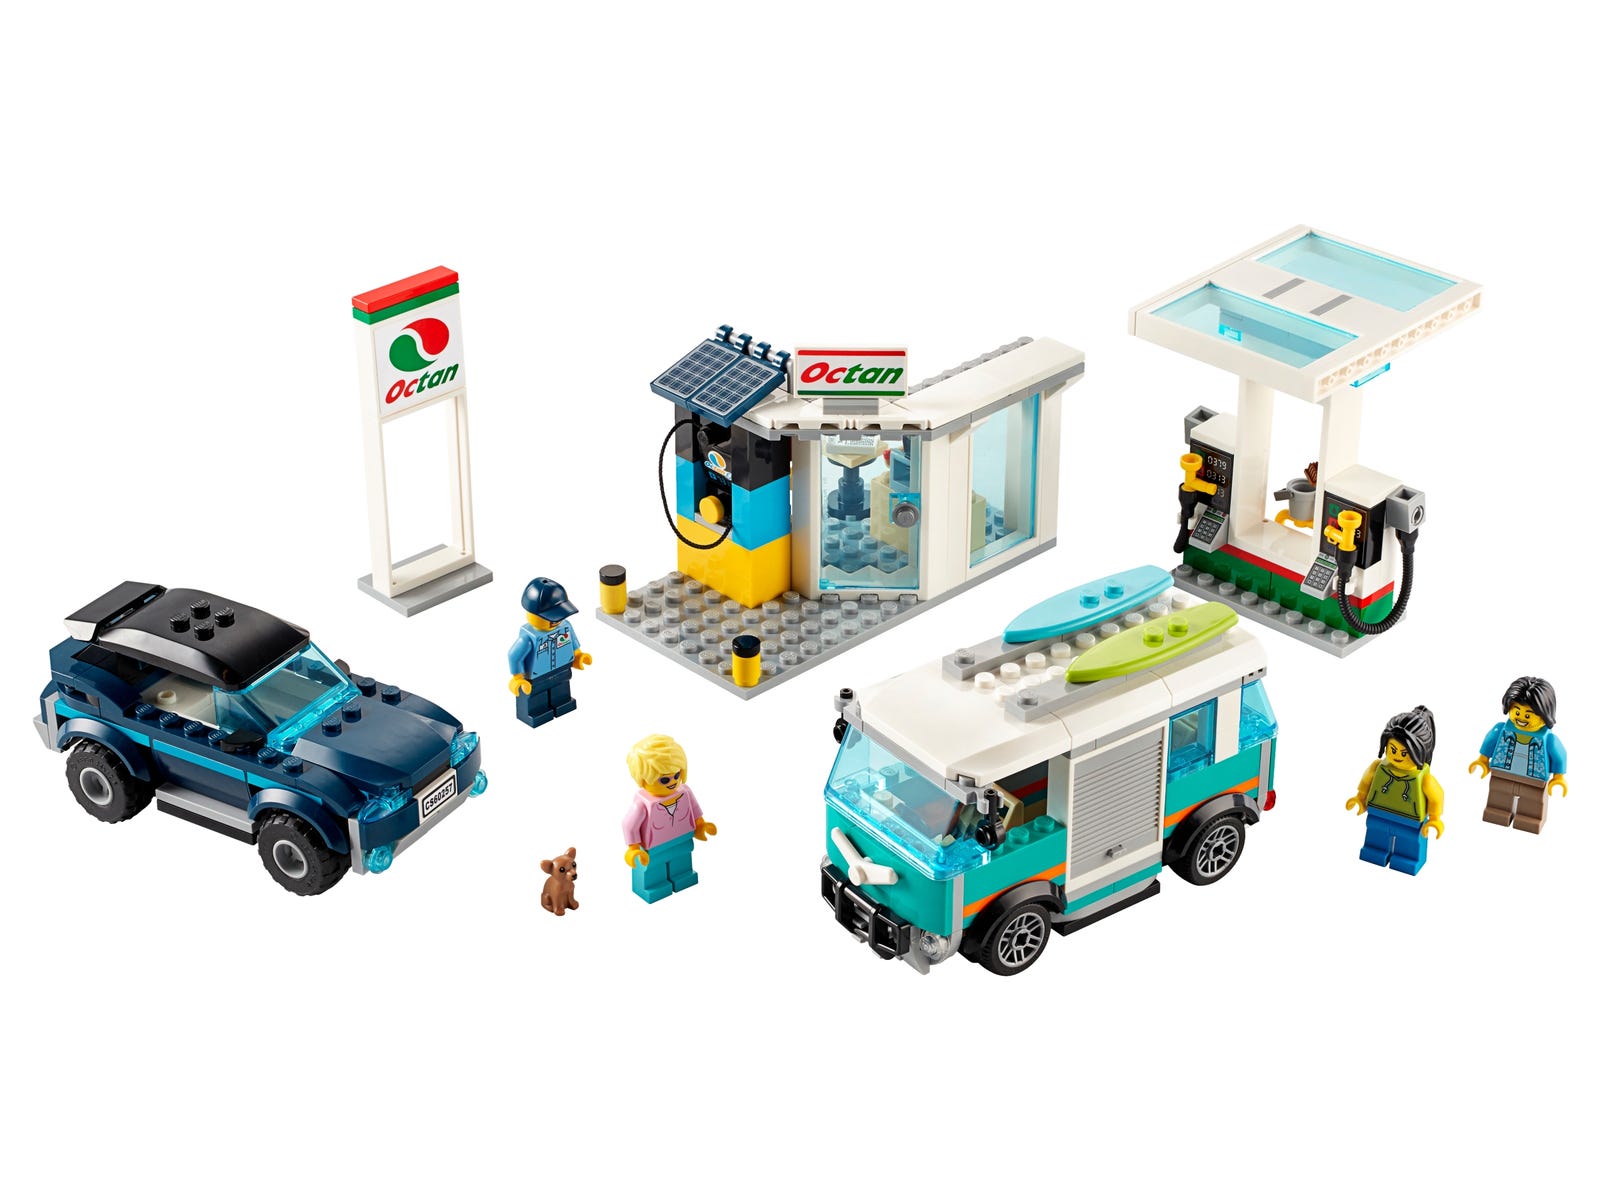 Lego City Service Station 60257